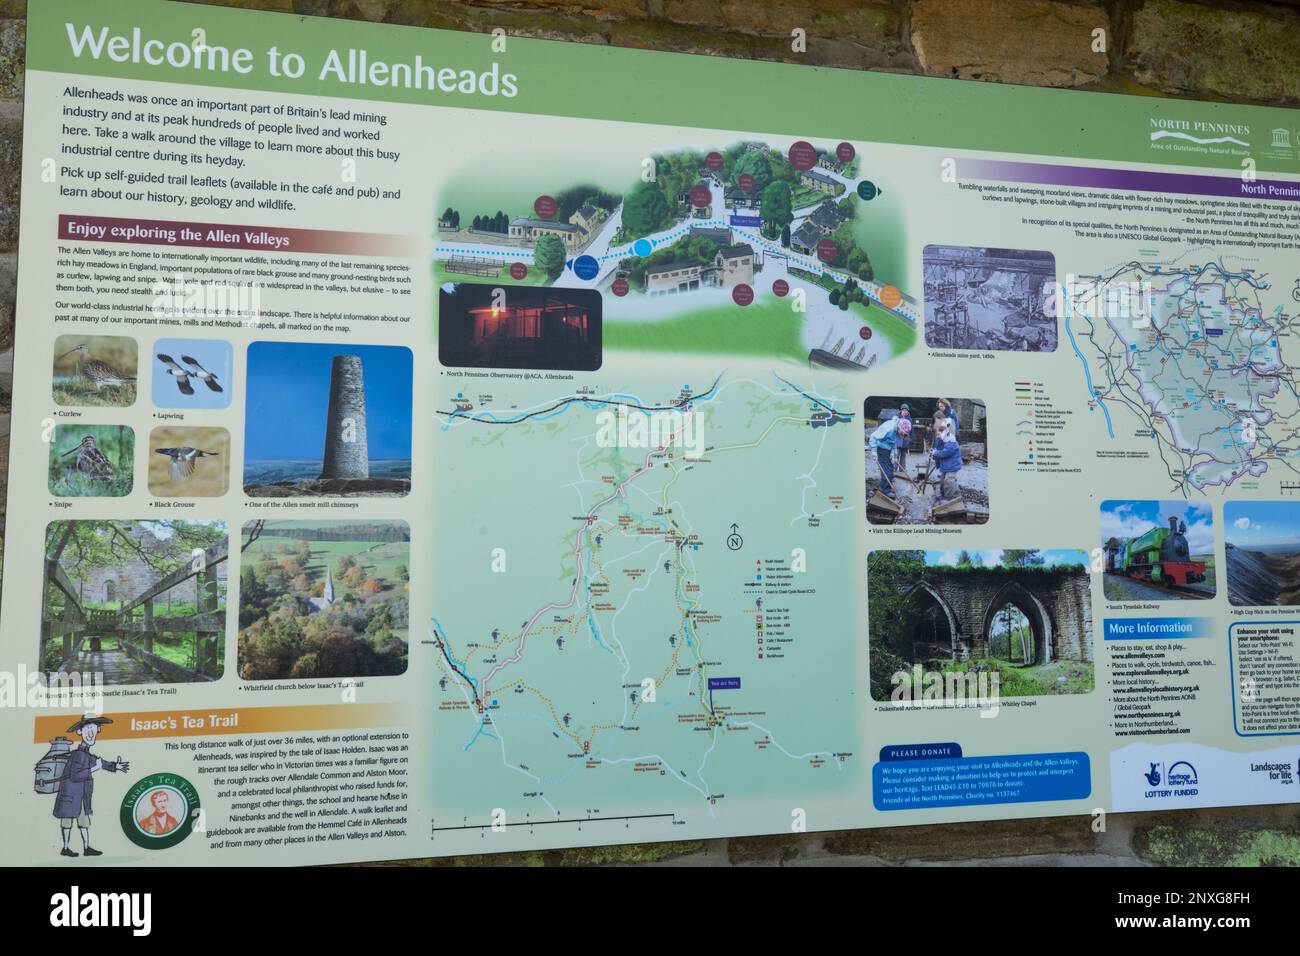 Benvenuto all'insegna Allenheads e al cartello informativo per i turisti che visitano le valli Allen nell'area North pennines di straordinaria bellezza naturale Foto Stock